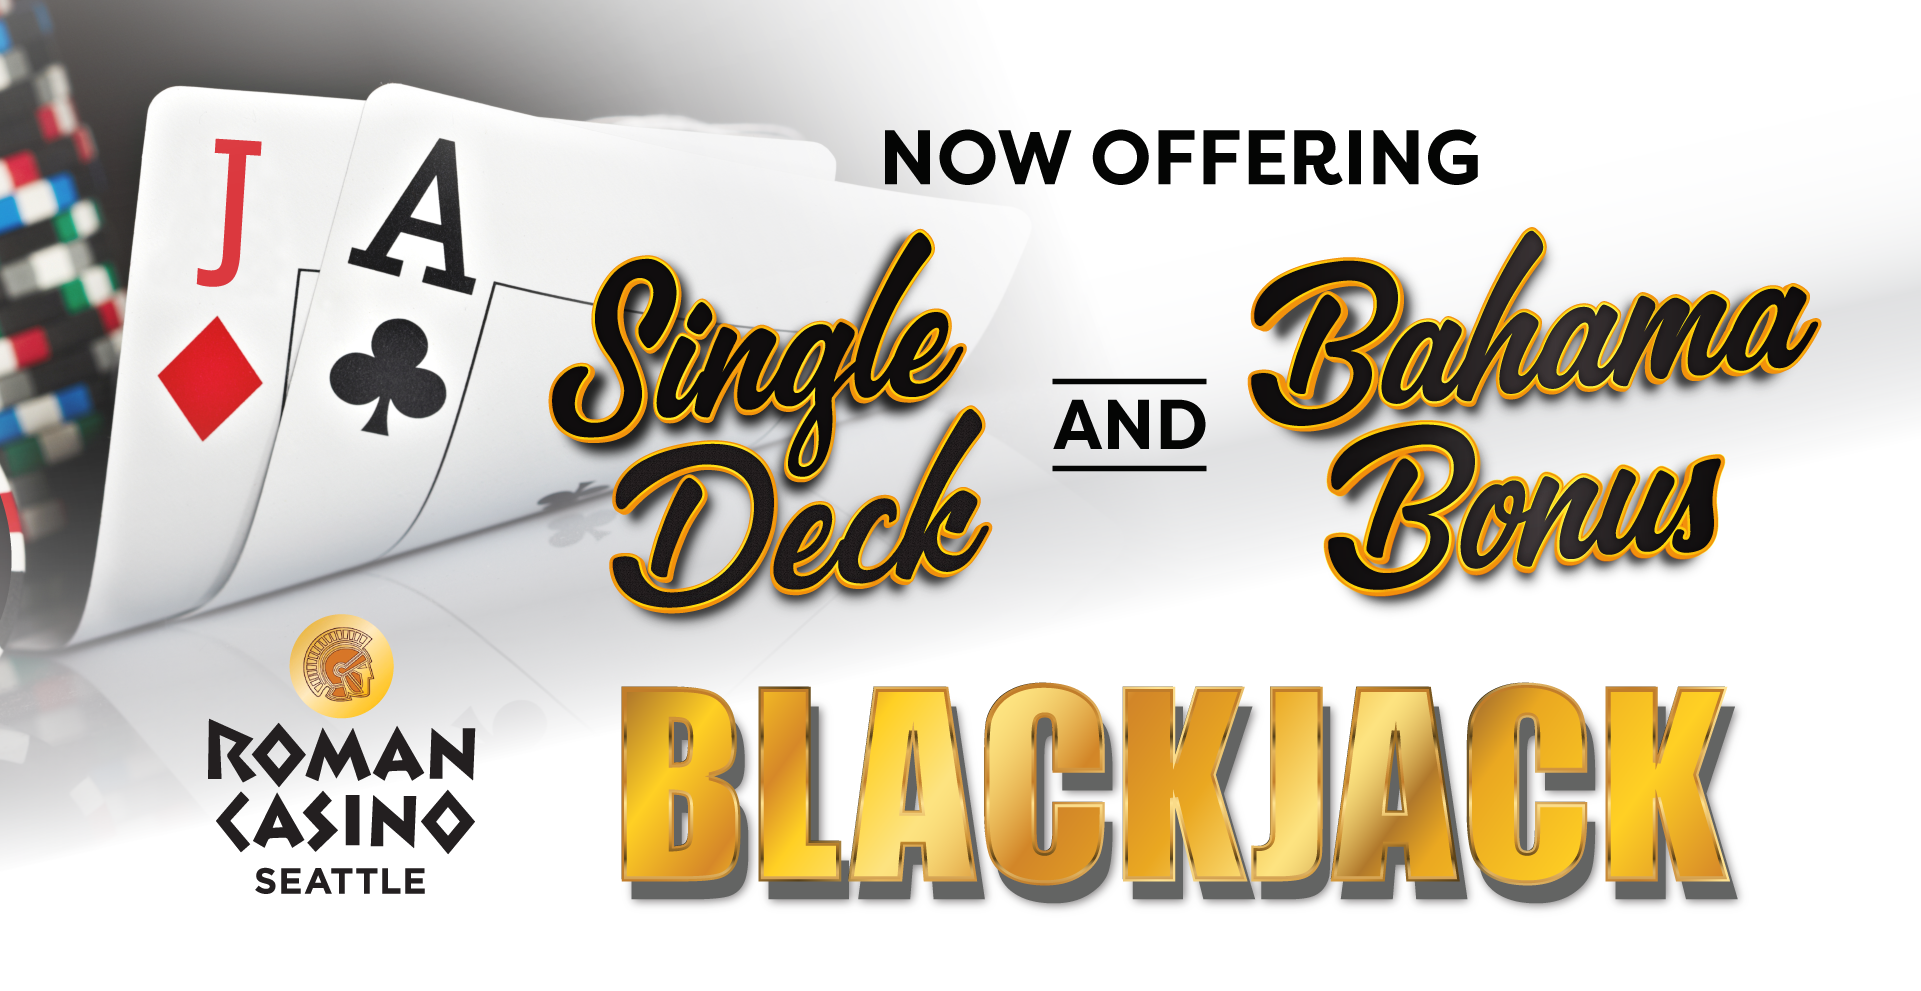 Roman Casino Seattle | Now Offering Blackjack